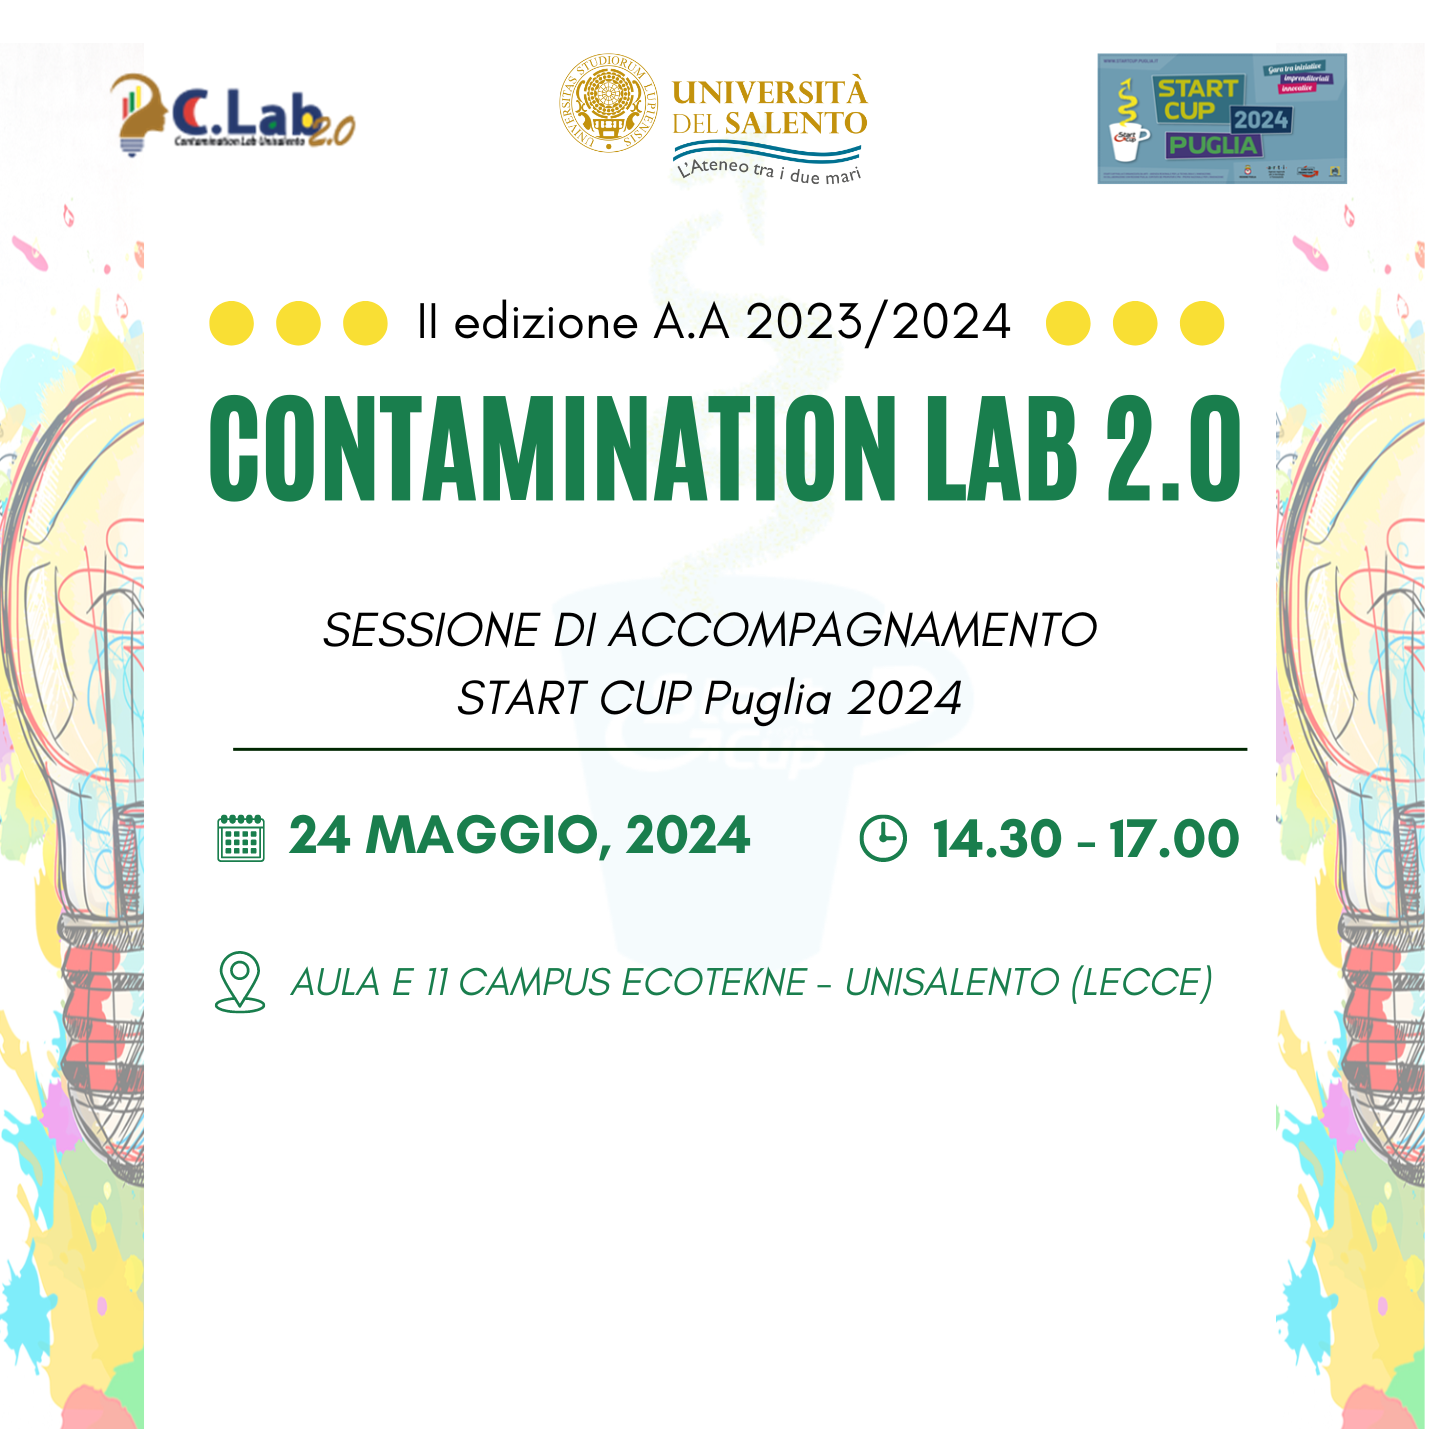 Il 24 maggio sessione di accompagnamento ad hoc per i team del Contamination Lab 2.0